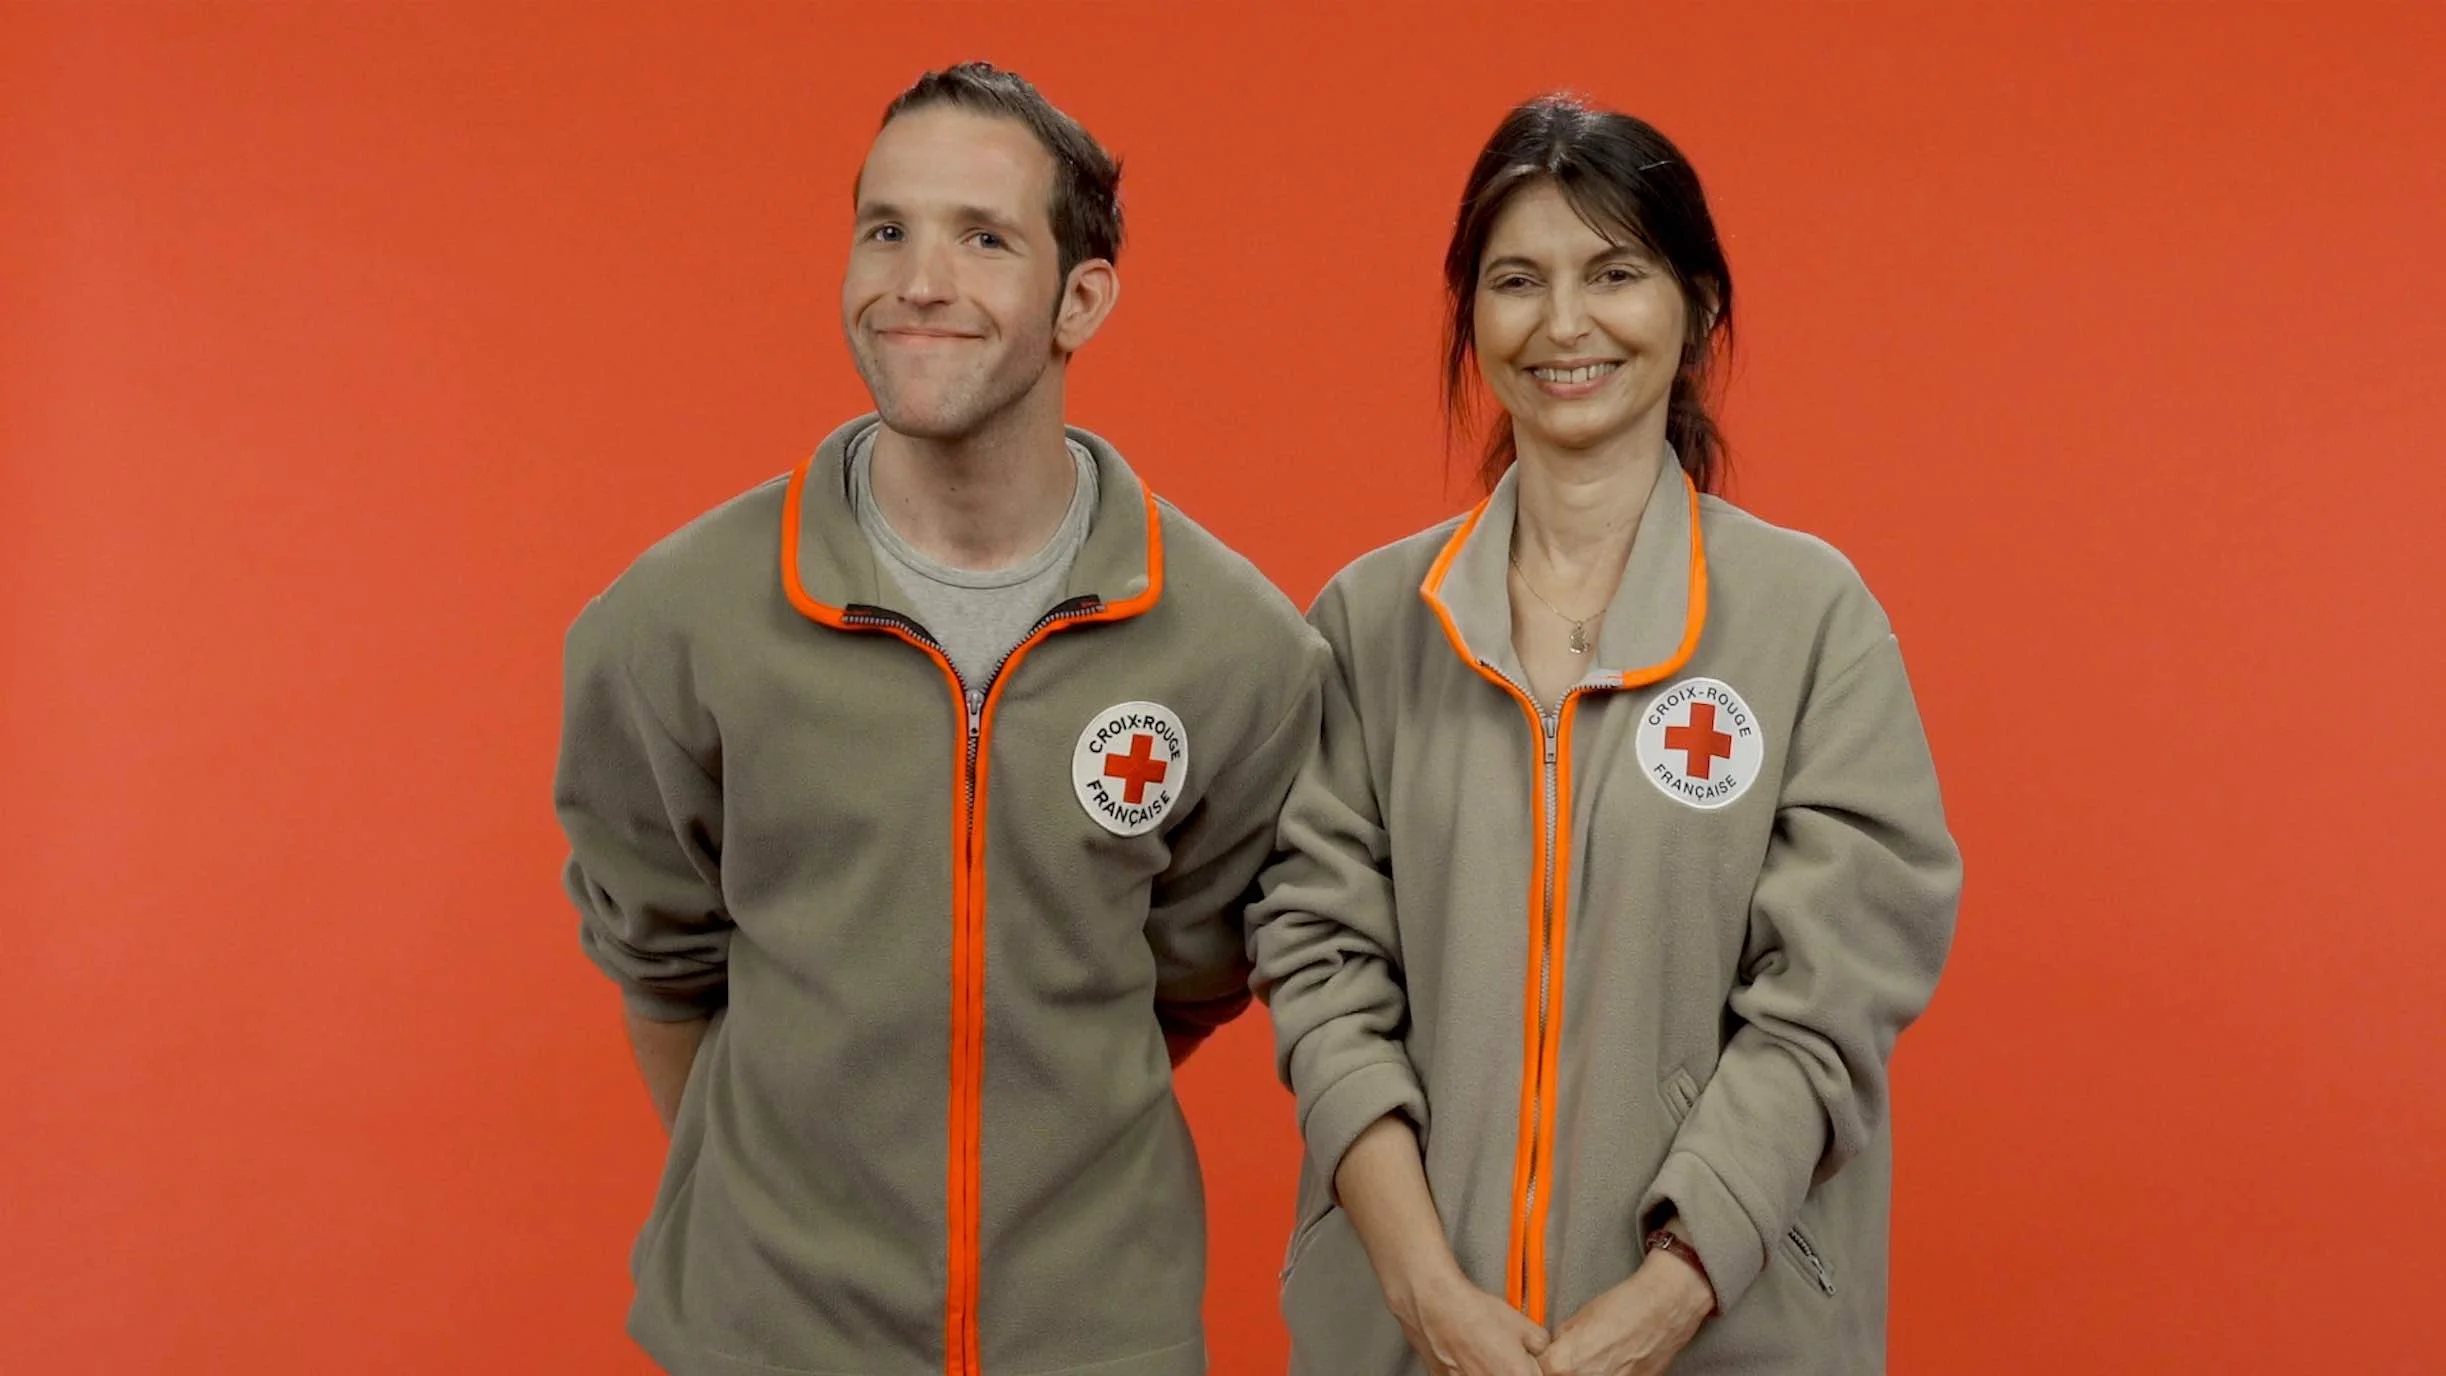 Vidéo : Le Speech de Rosine et Vincent du service d’aide et d’écoute de la Croix-Rouge